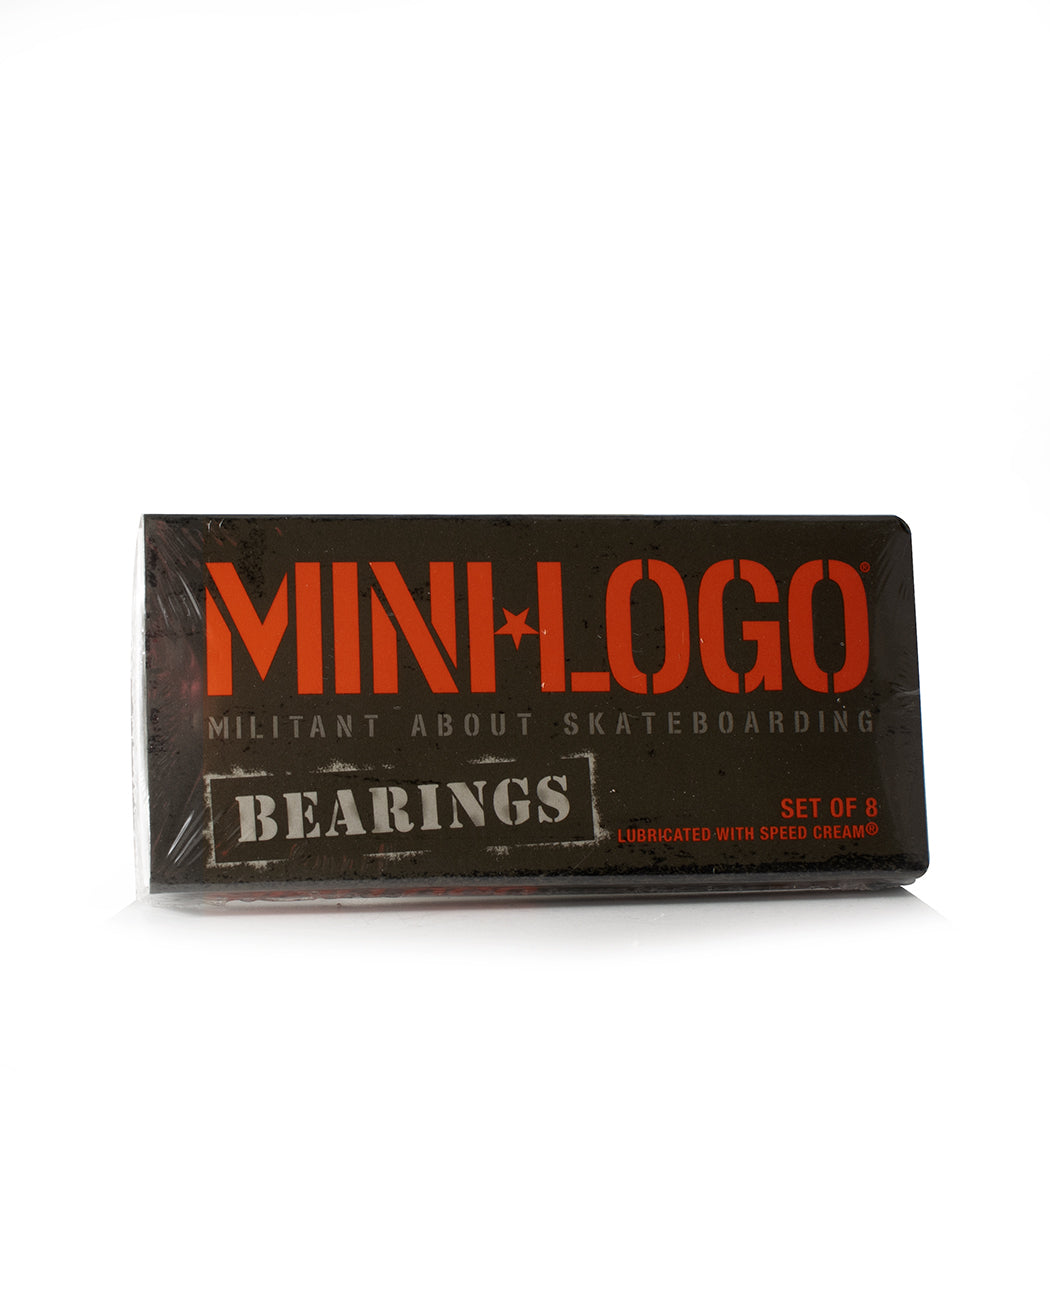 Mini logo bearings